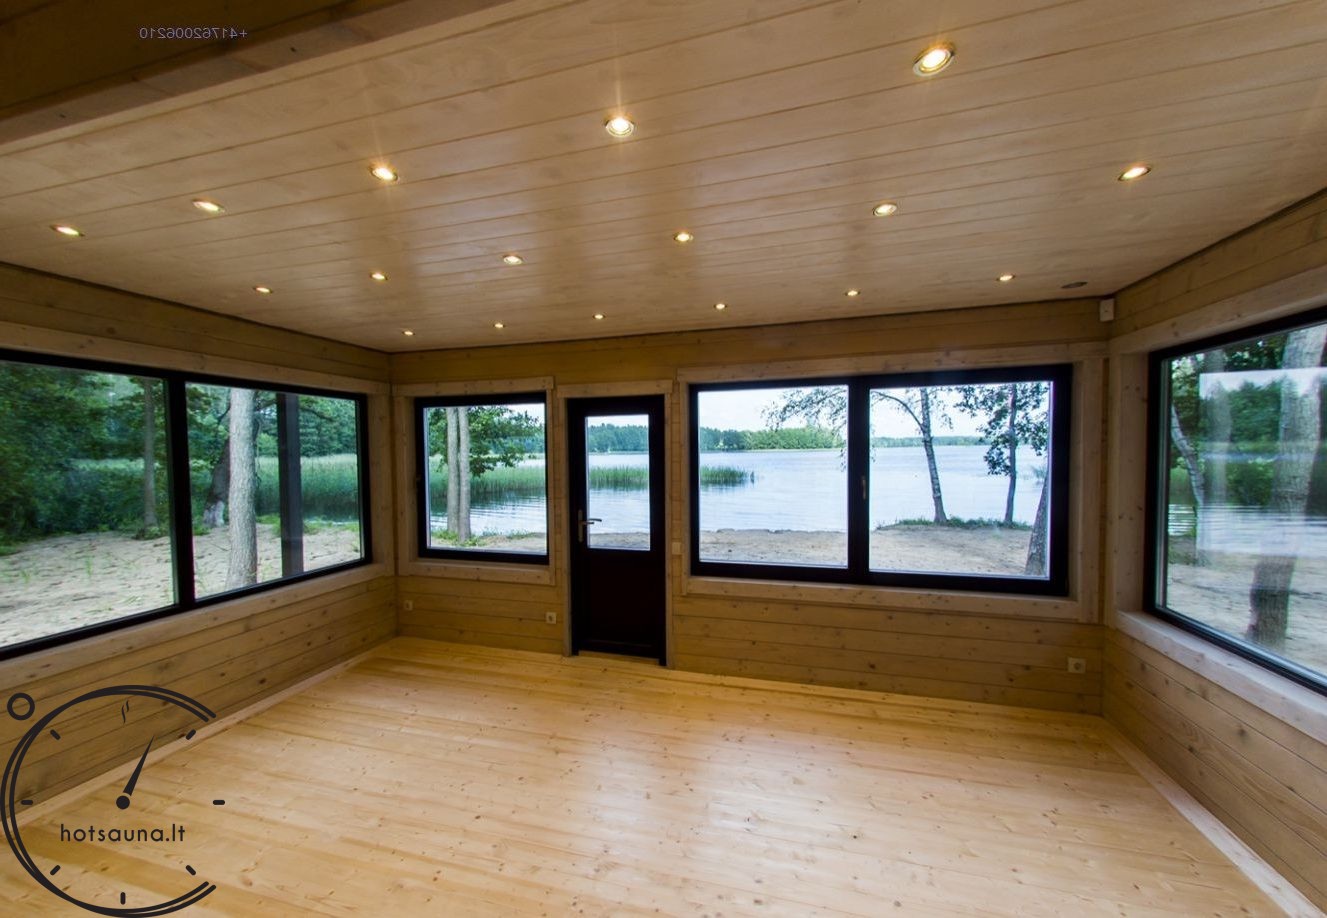 sauna for sale log cabin twinskin (28)